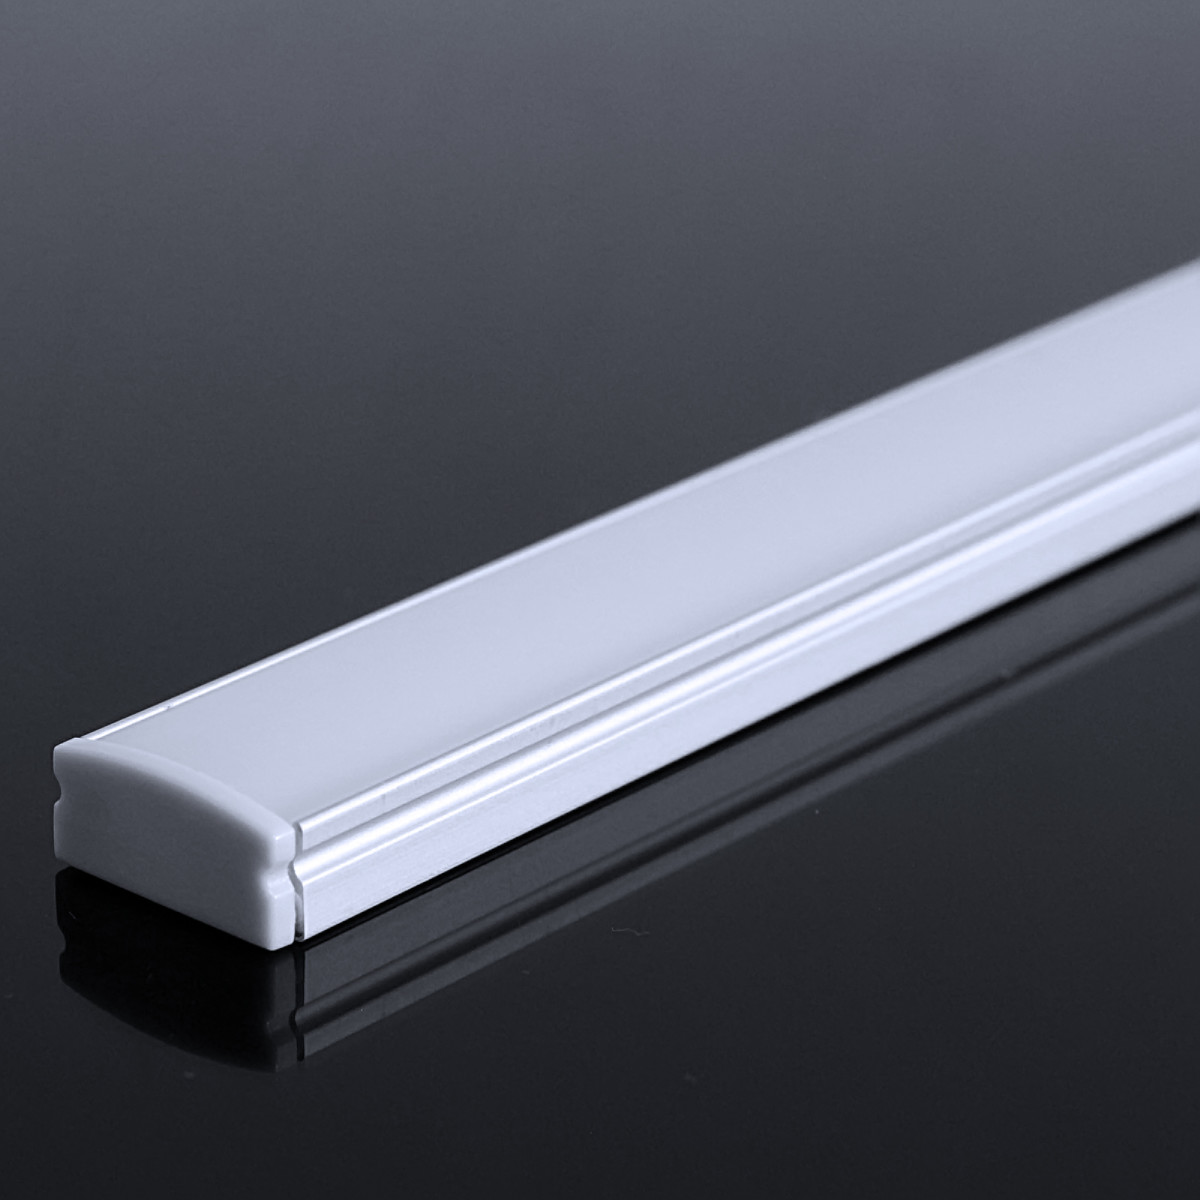 LED Flachprofil "Slim-Line" | Abdeckung diffus | Zuschnitt auf 74cm |